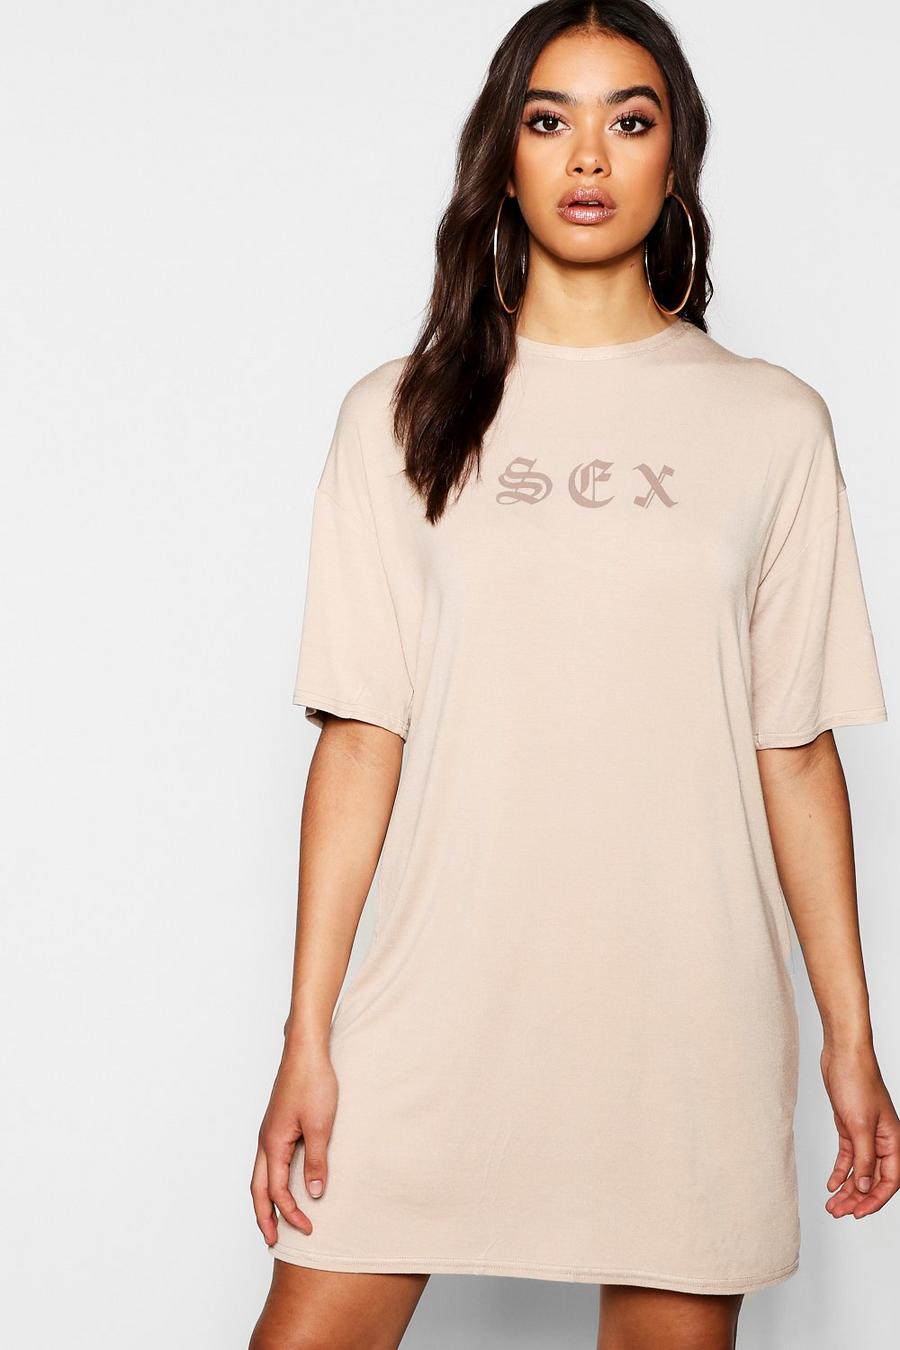 Vestido ancho estilo camiseta con eslogan gótico, Crudo image number 1